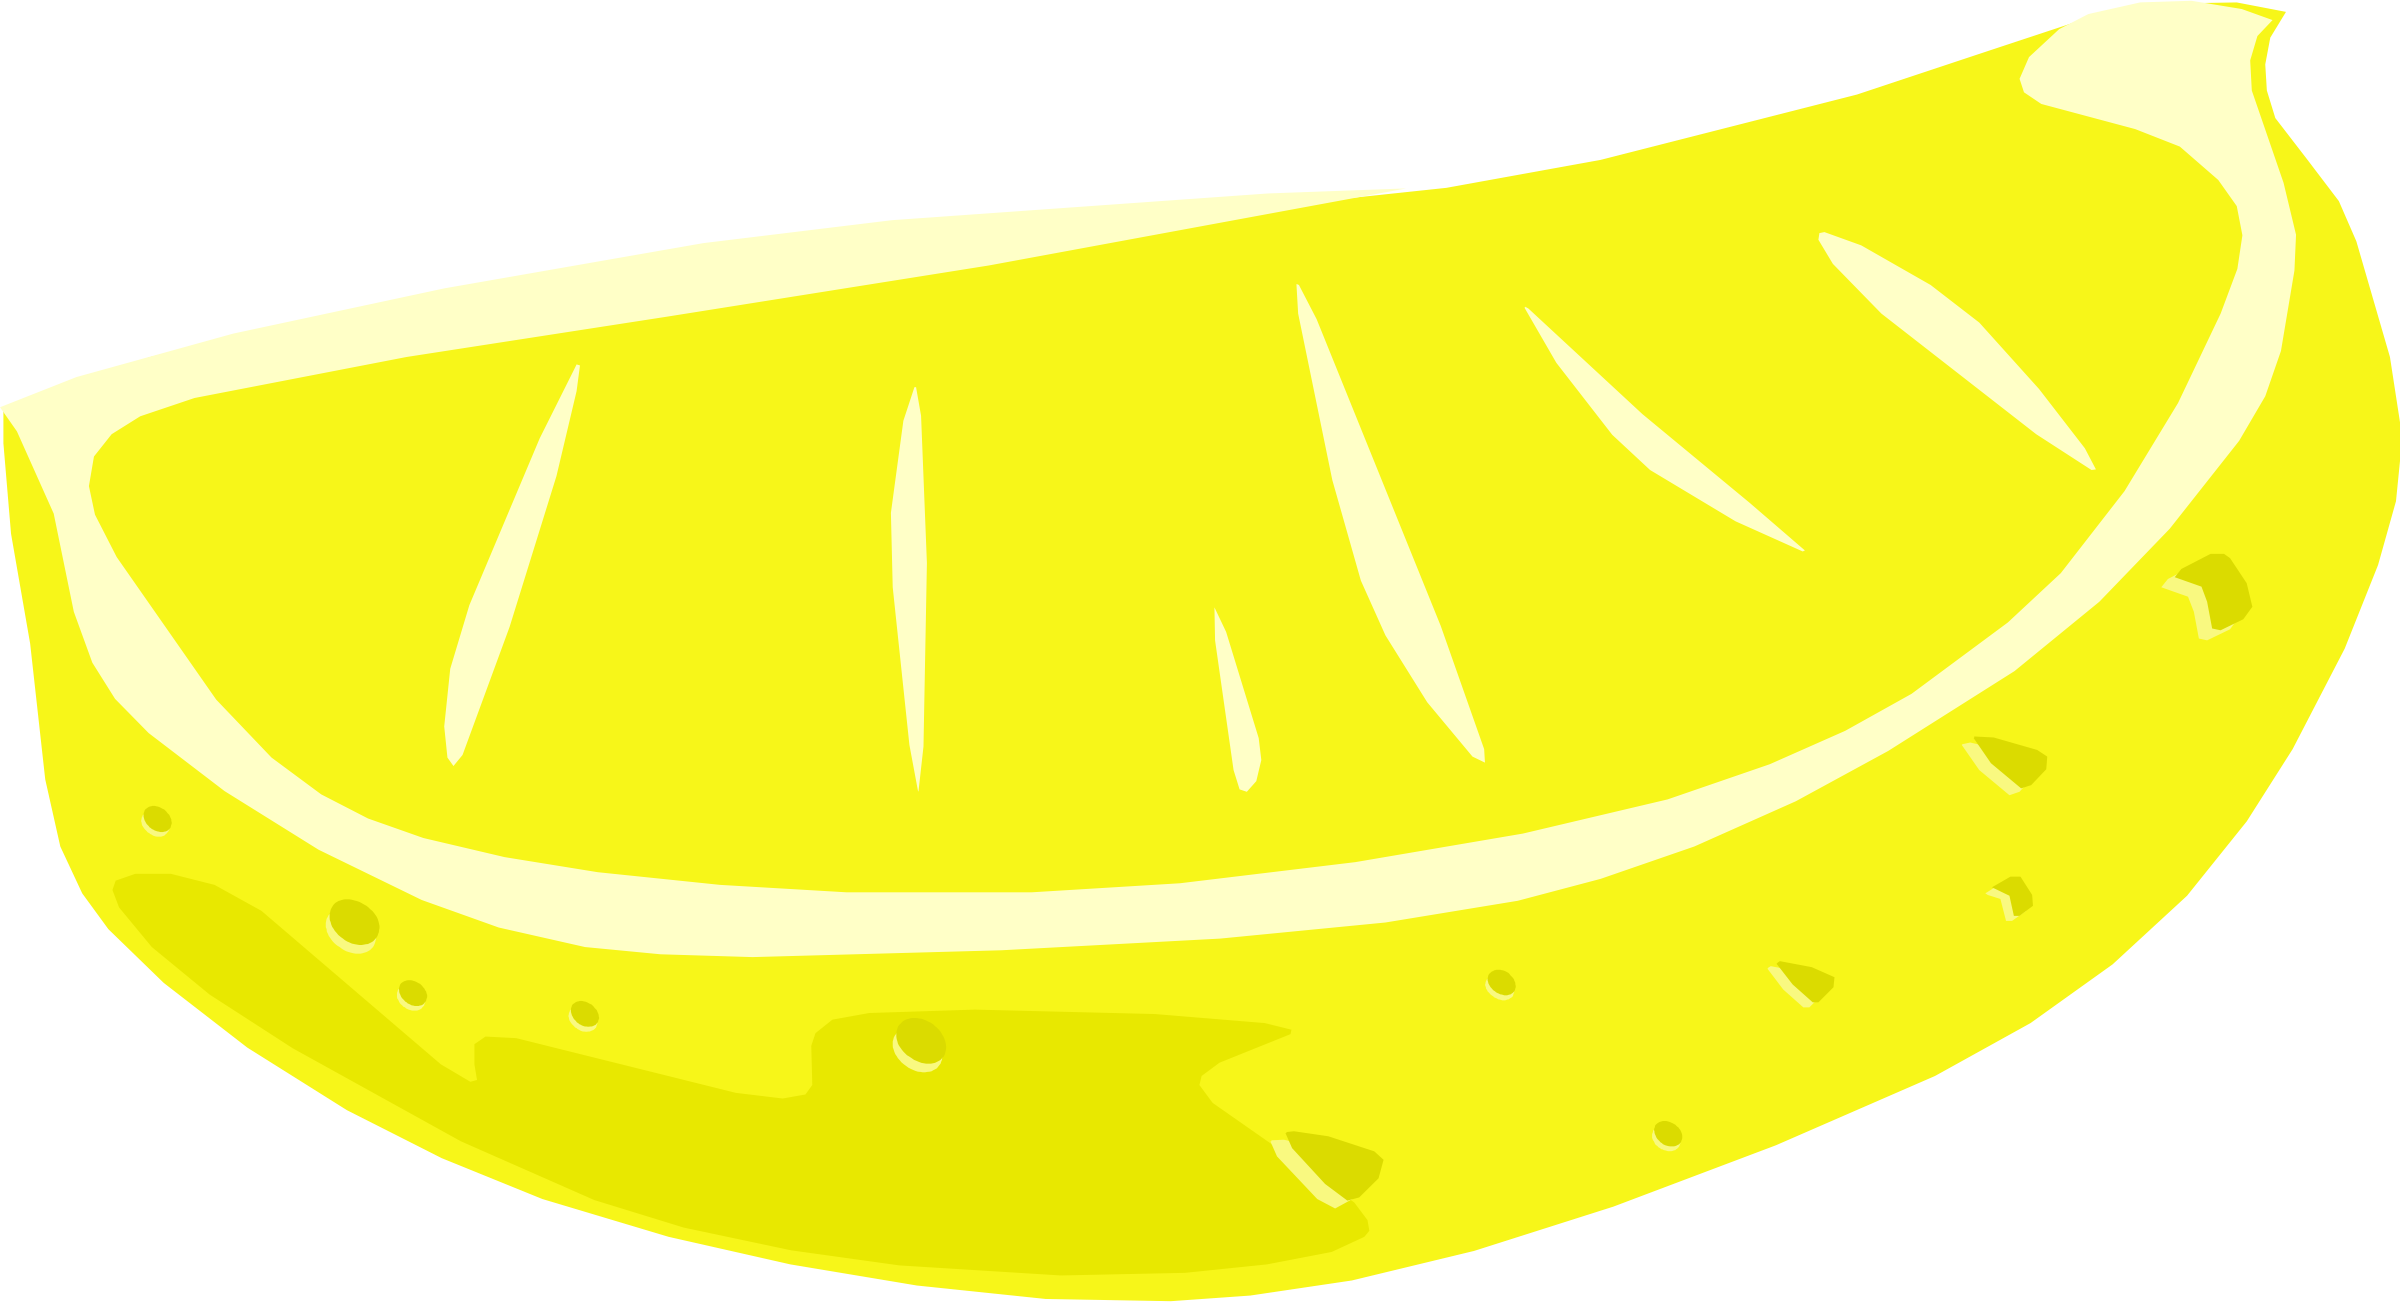 Lemon Slice Clipart Lemon Wedge Clip Art - Lemon Free To Use (2400x1302)